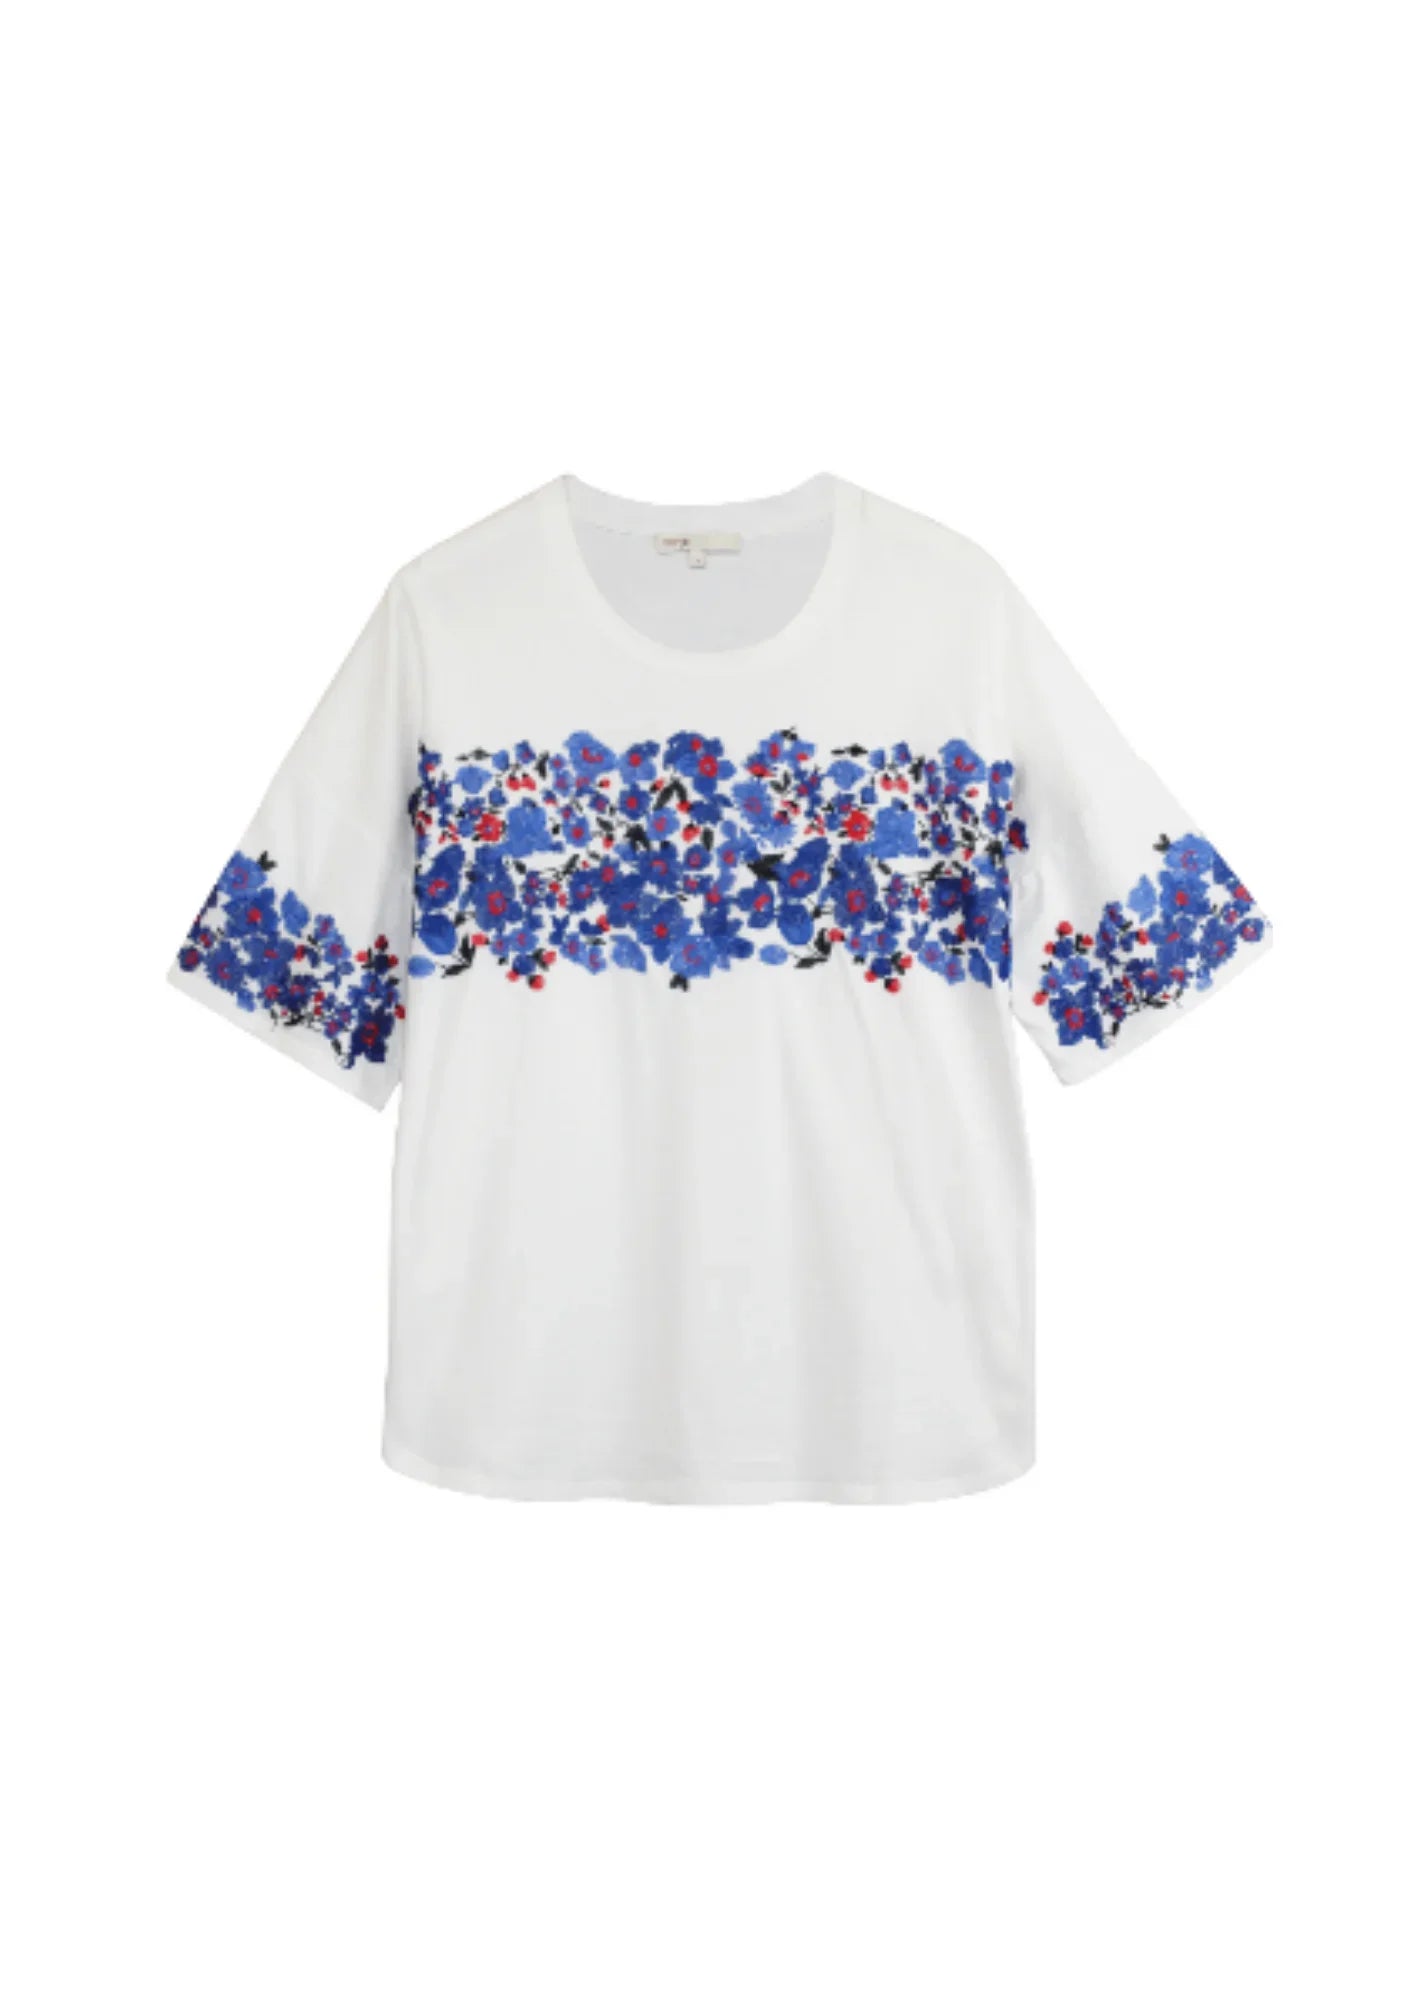 T-shirt avec une texture florale brodée